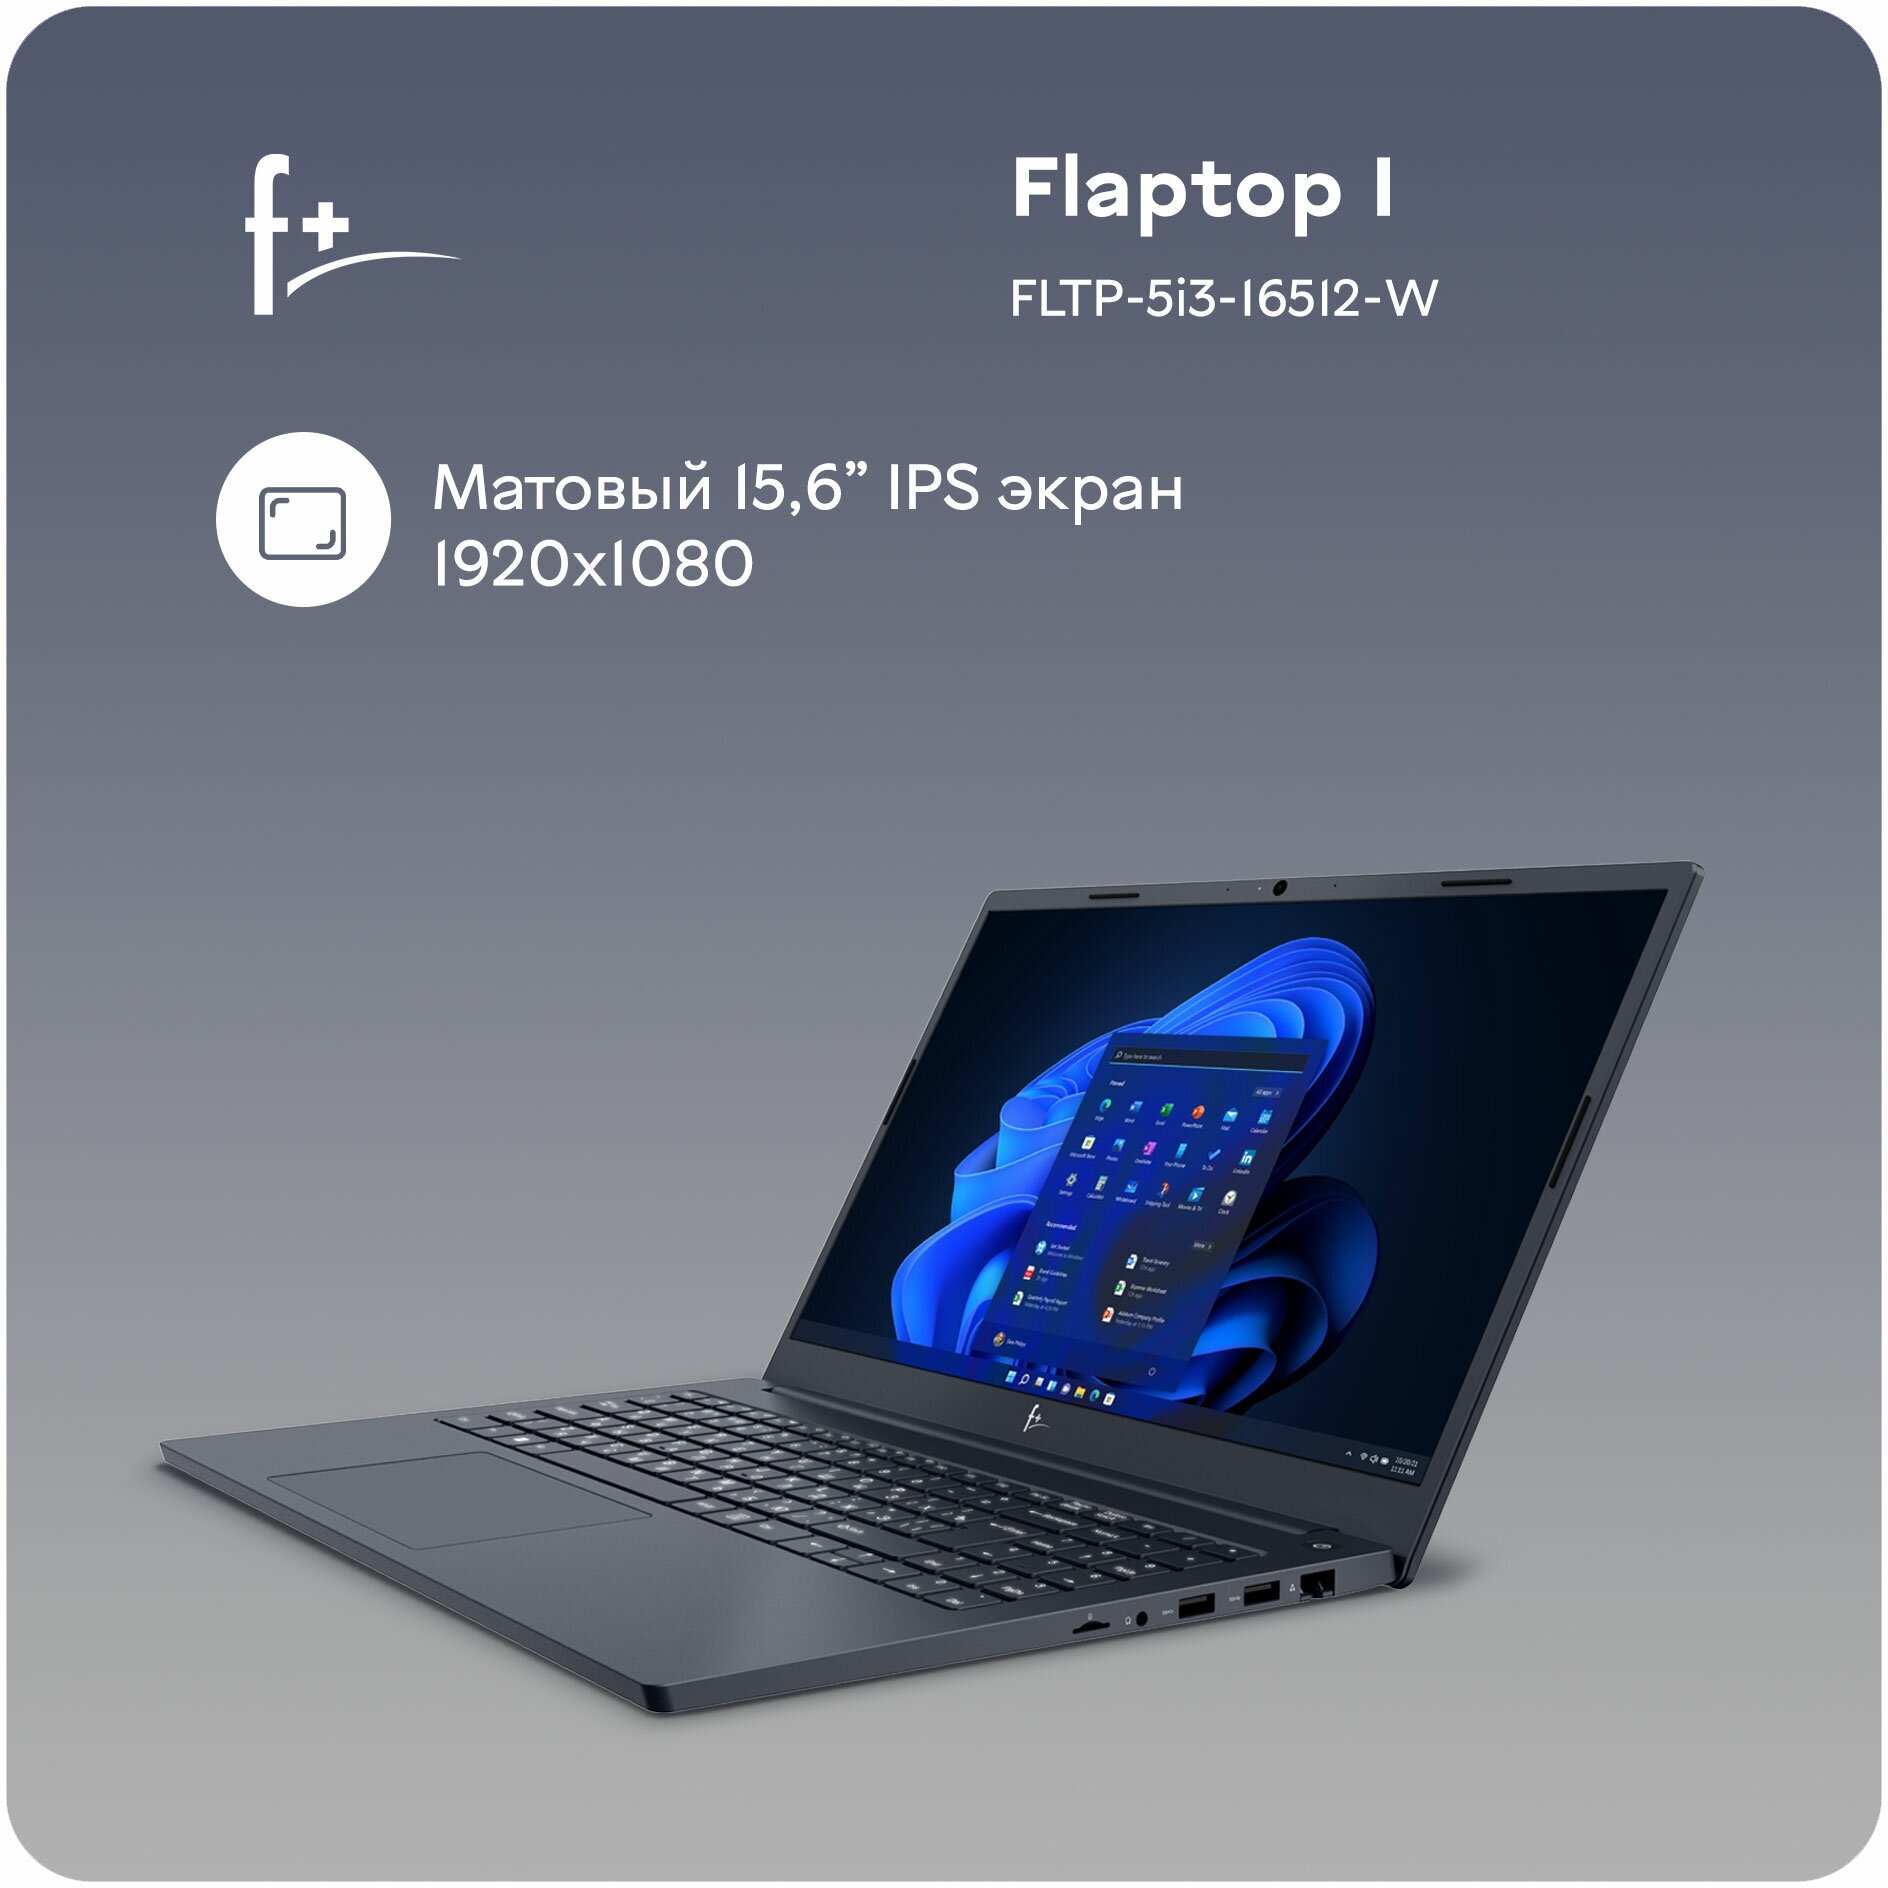 Ноутбук F+ FLAPTOP I FLTP-5i3-16512-W